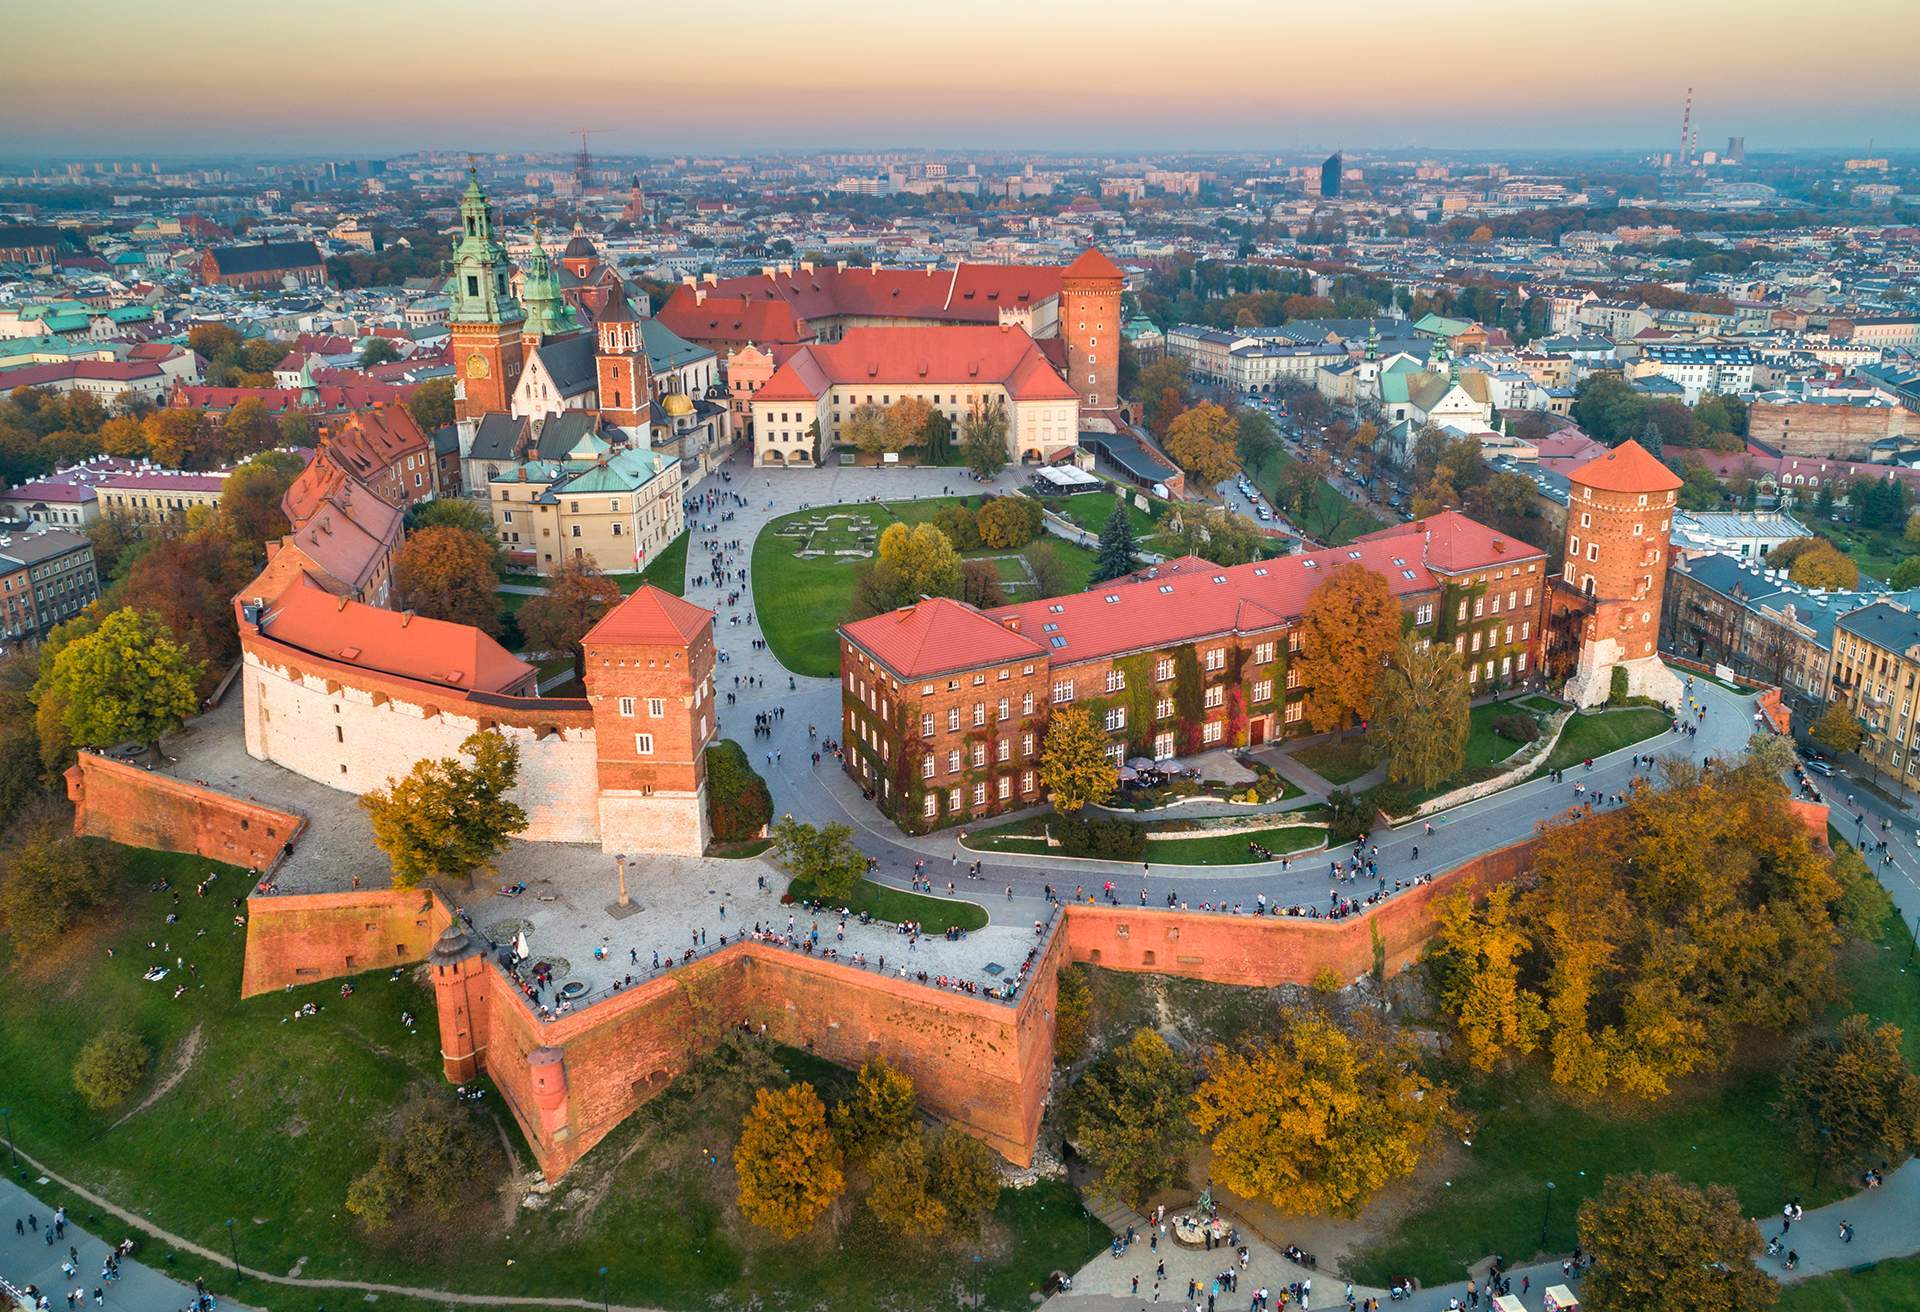 Wavel Hill and castle, Krakow. Poland